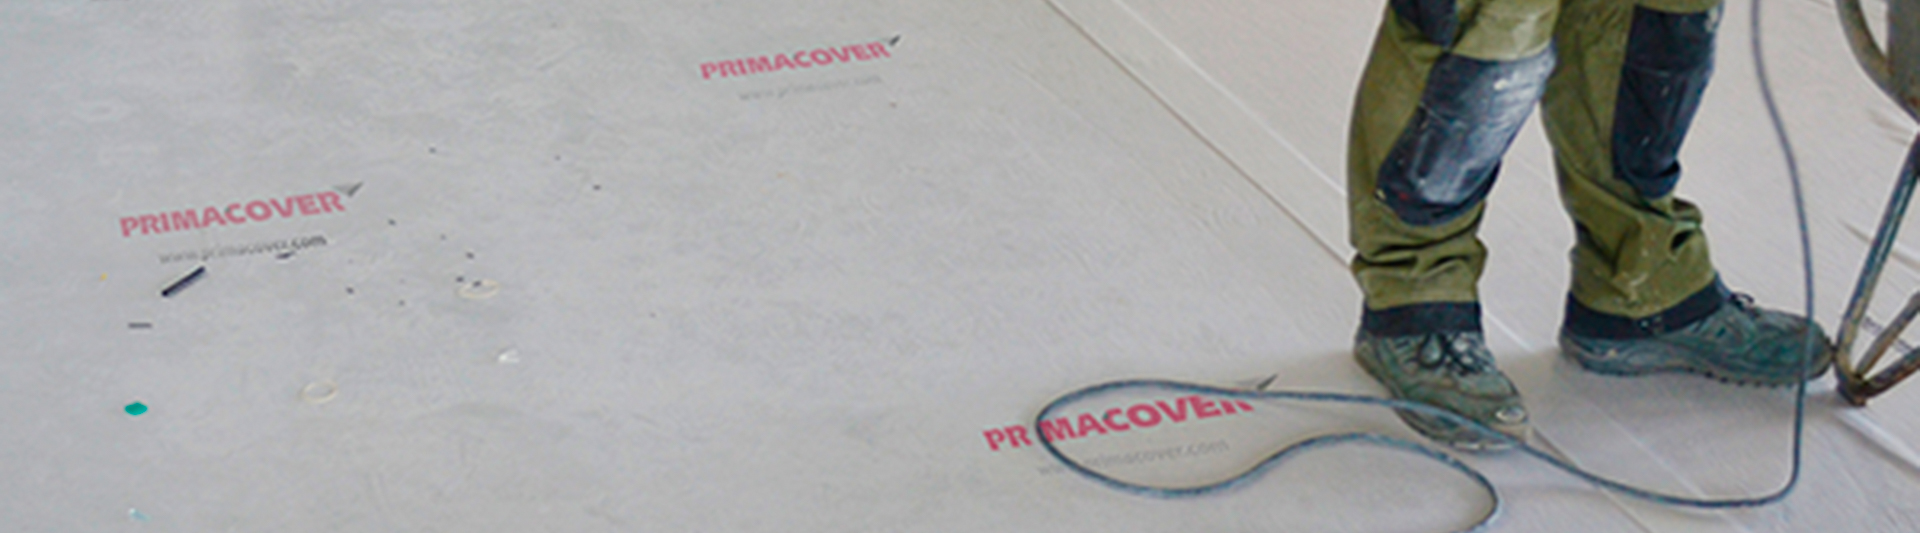 PrimaCover beschermt vloer tijdens werkzaamheden